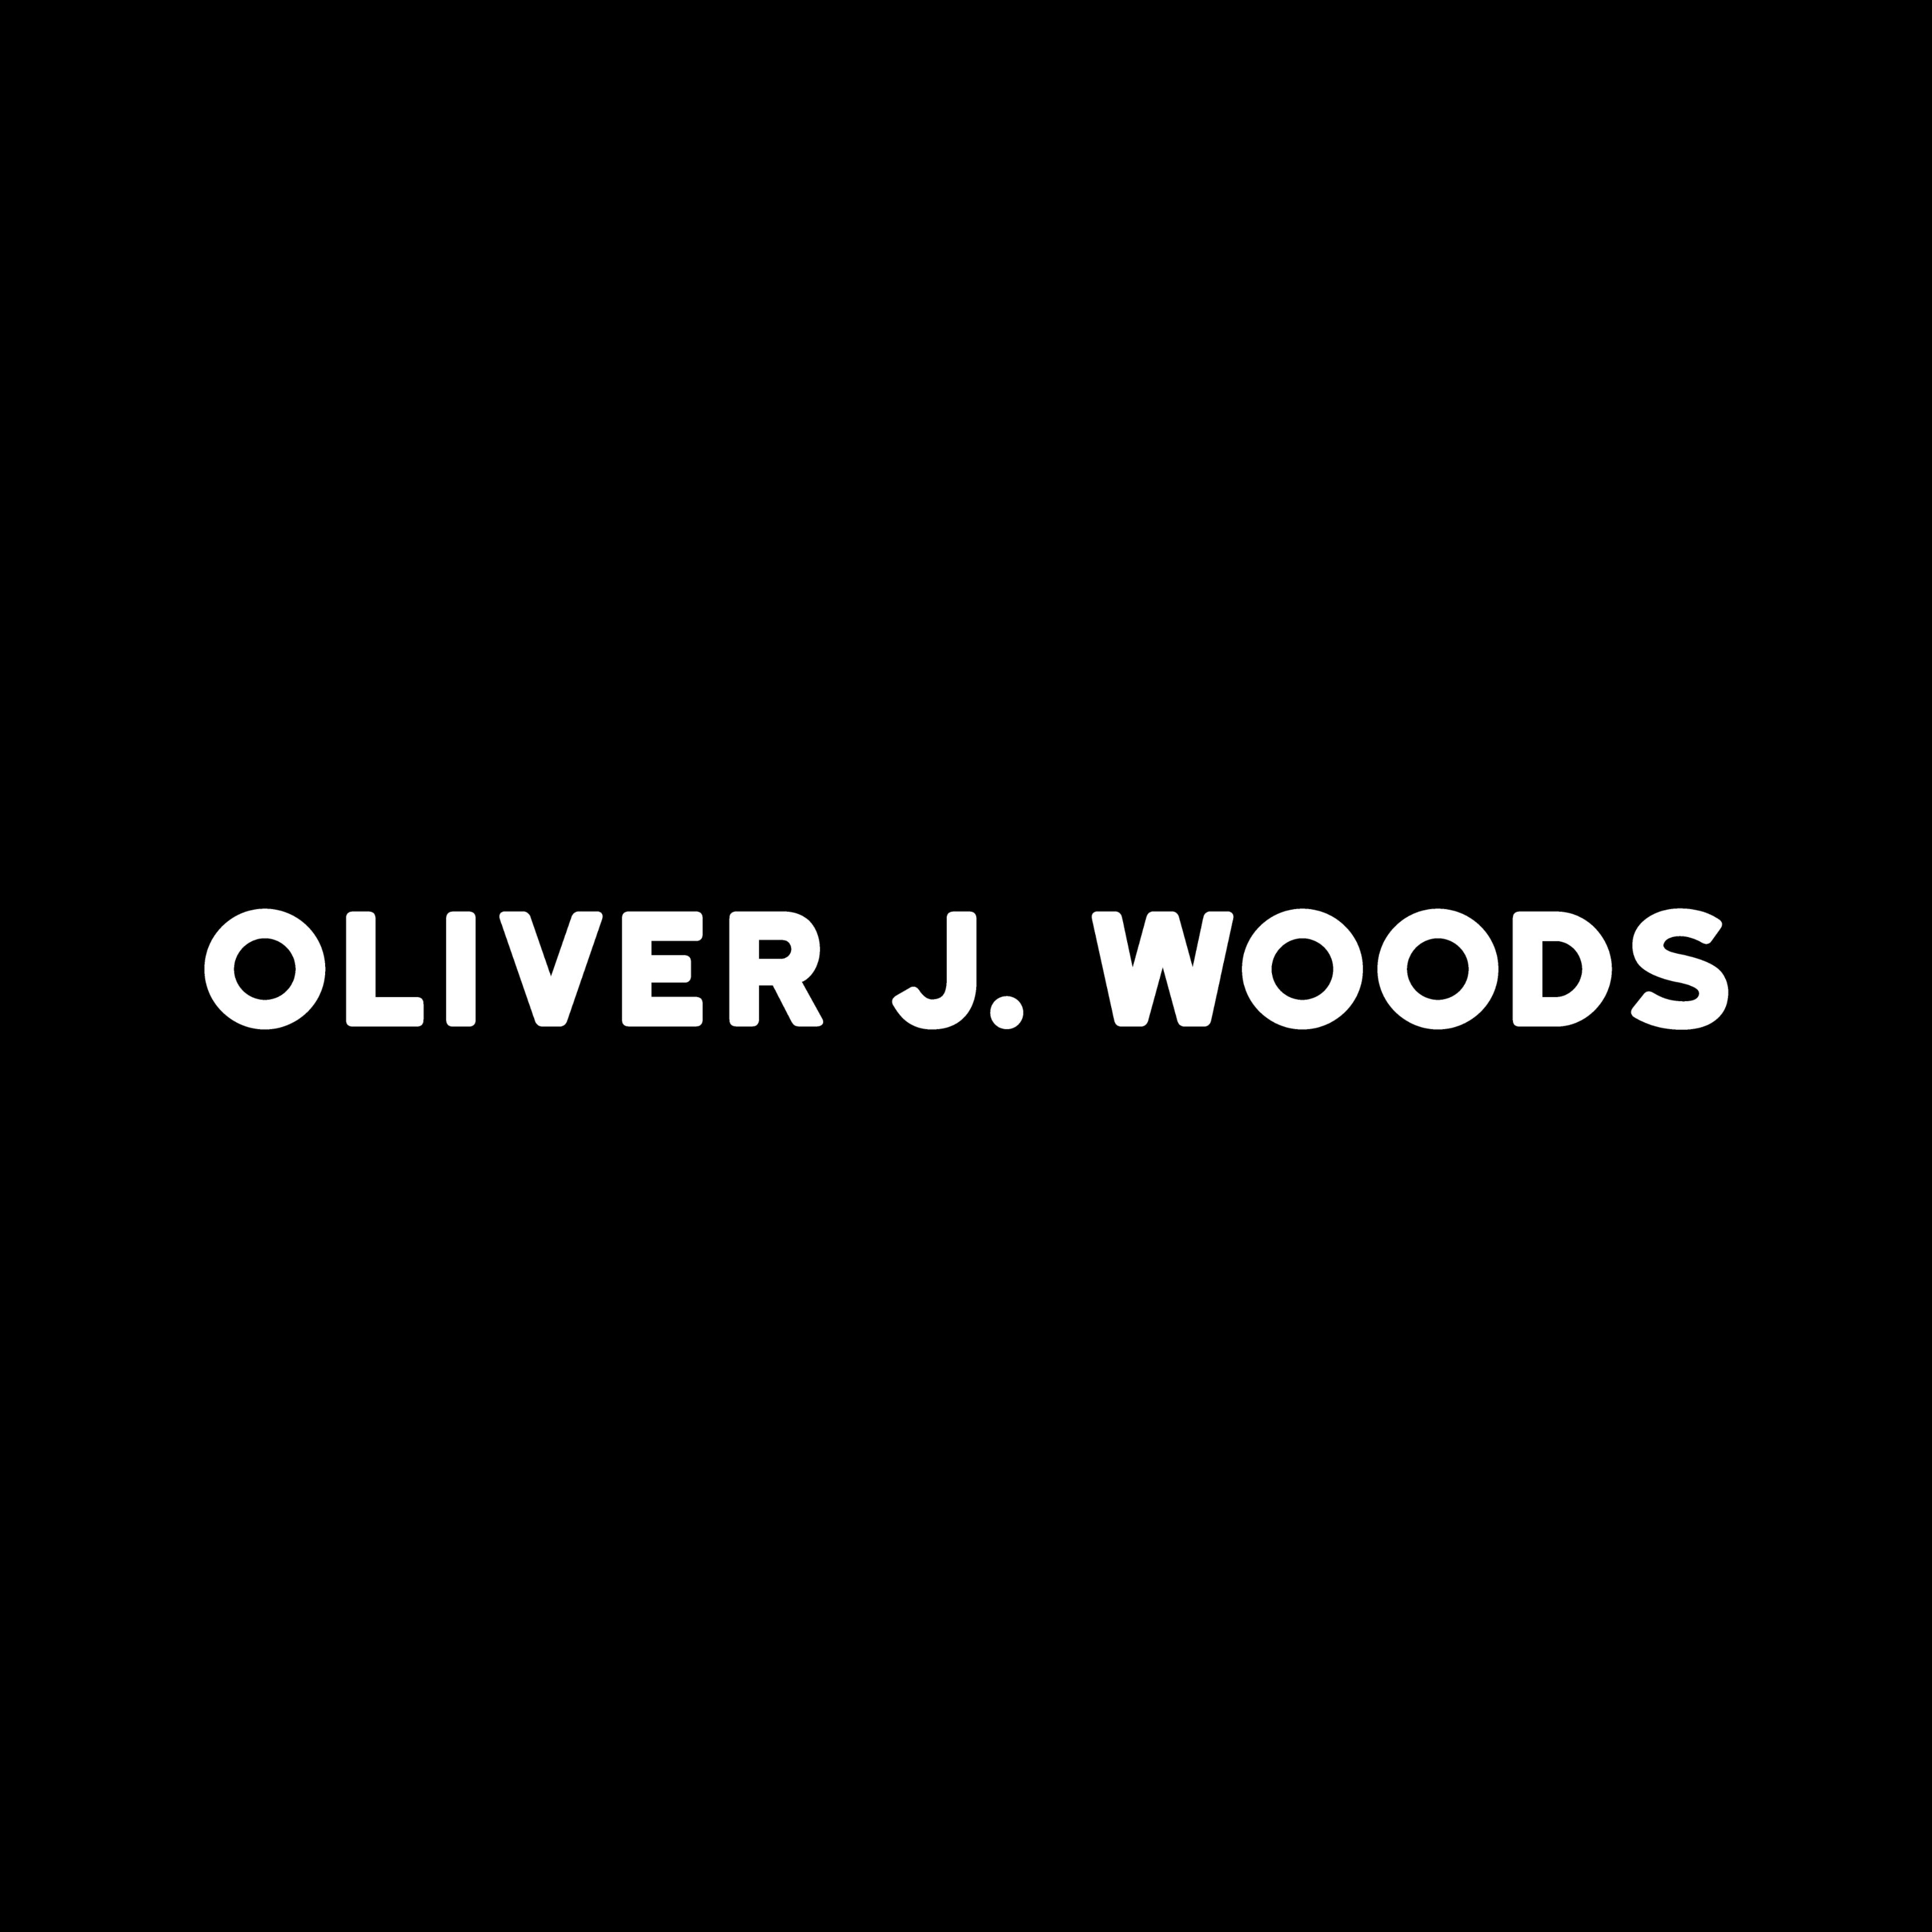 Oliver J. Woods